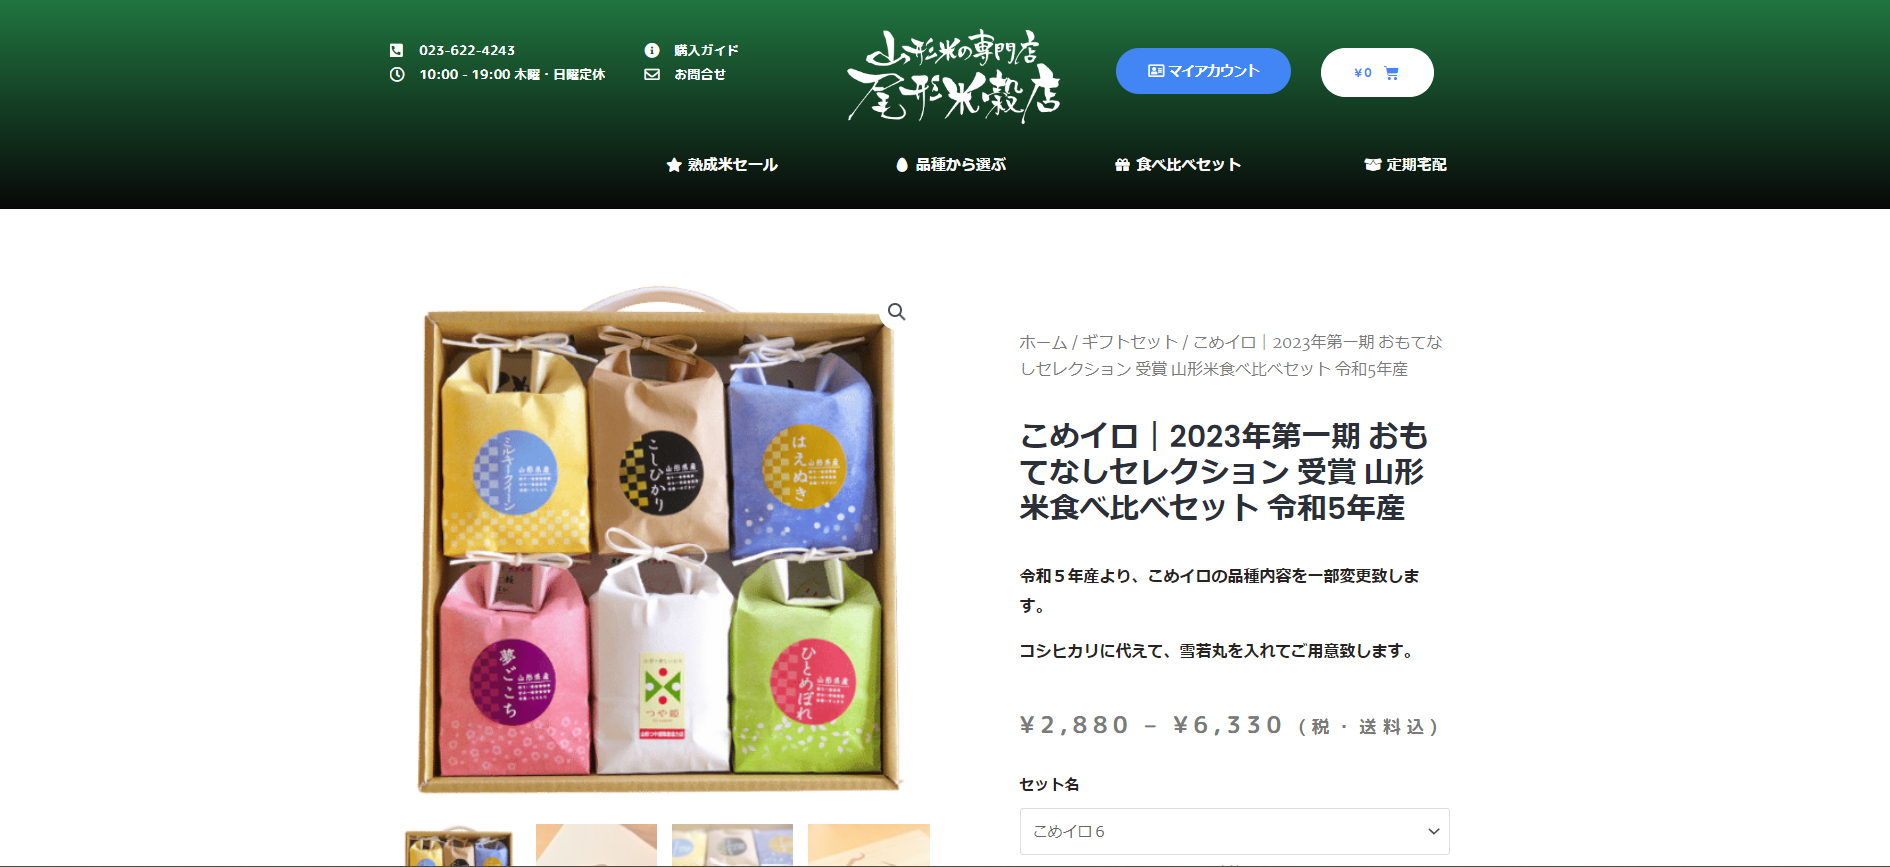 5.尾形米穀店「こめイロ 山形米食べ比べセット 2.7Kg」